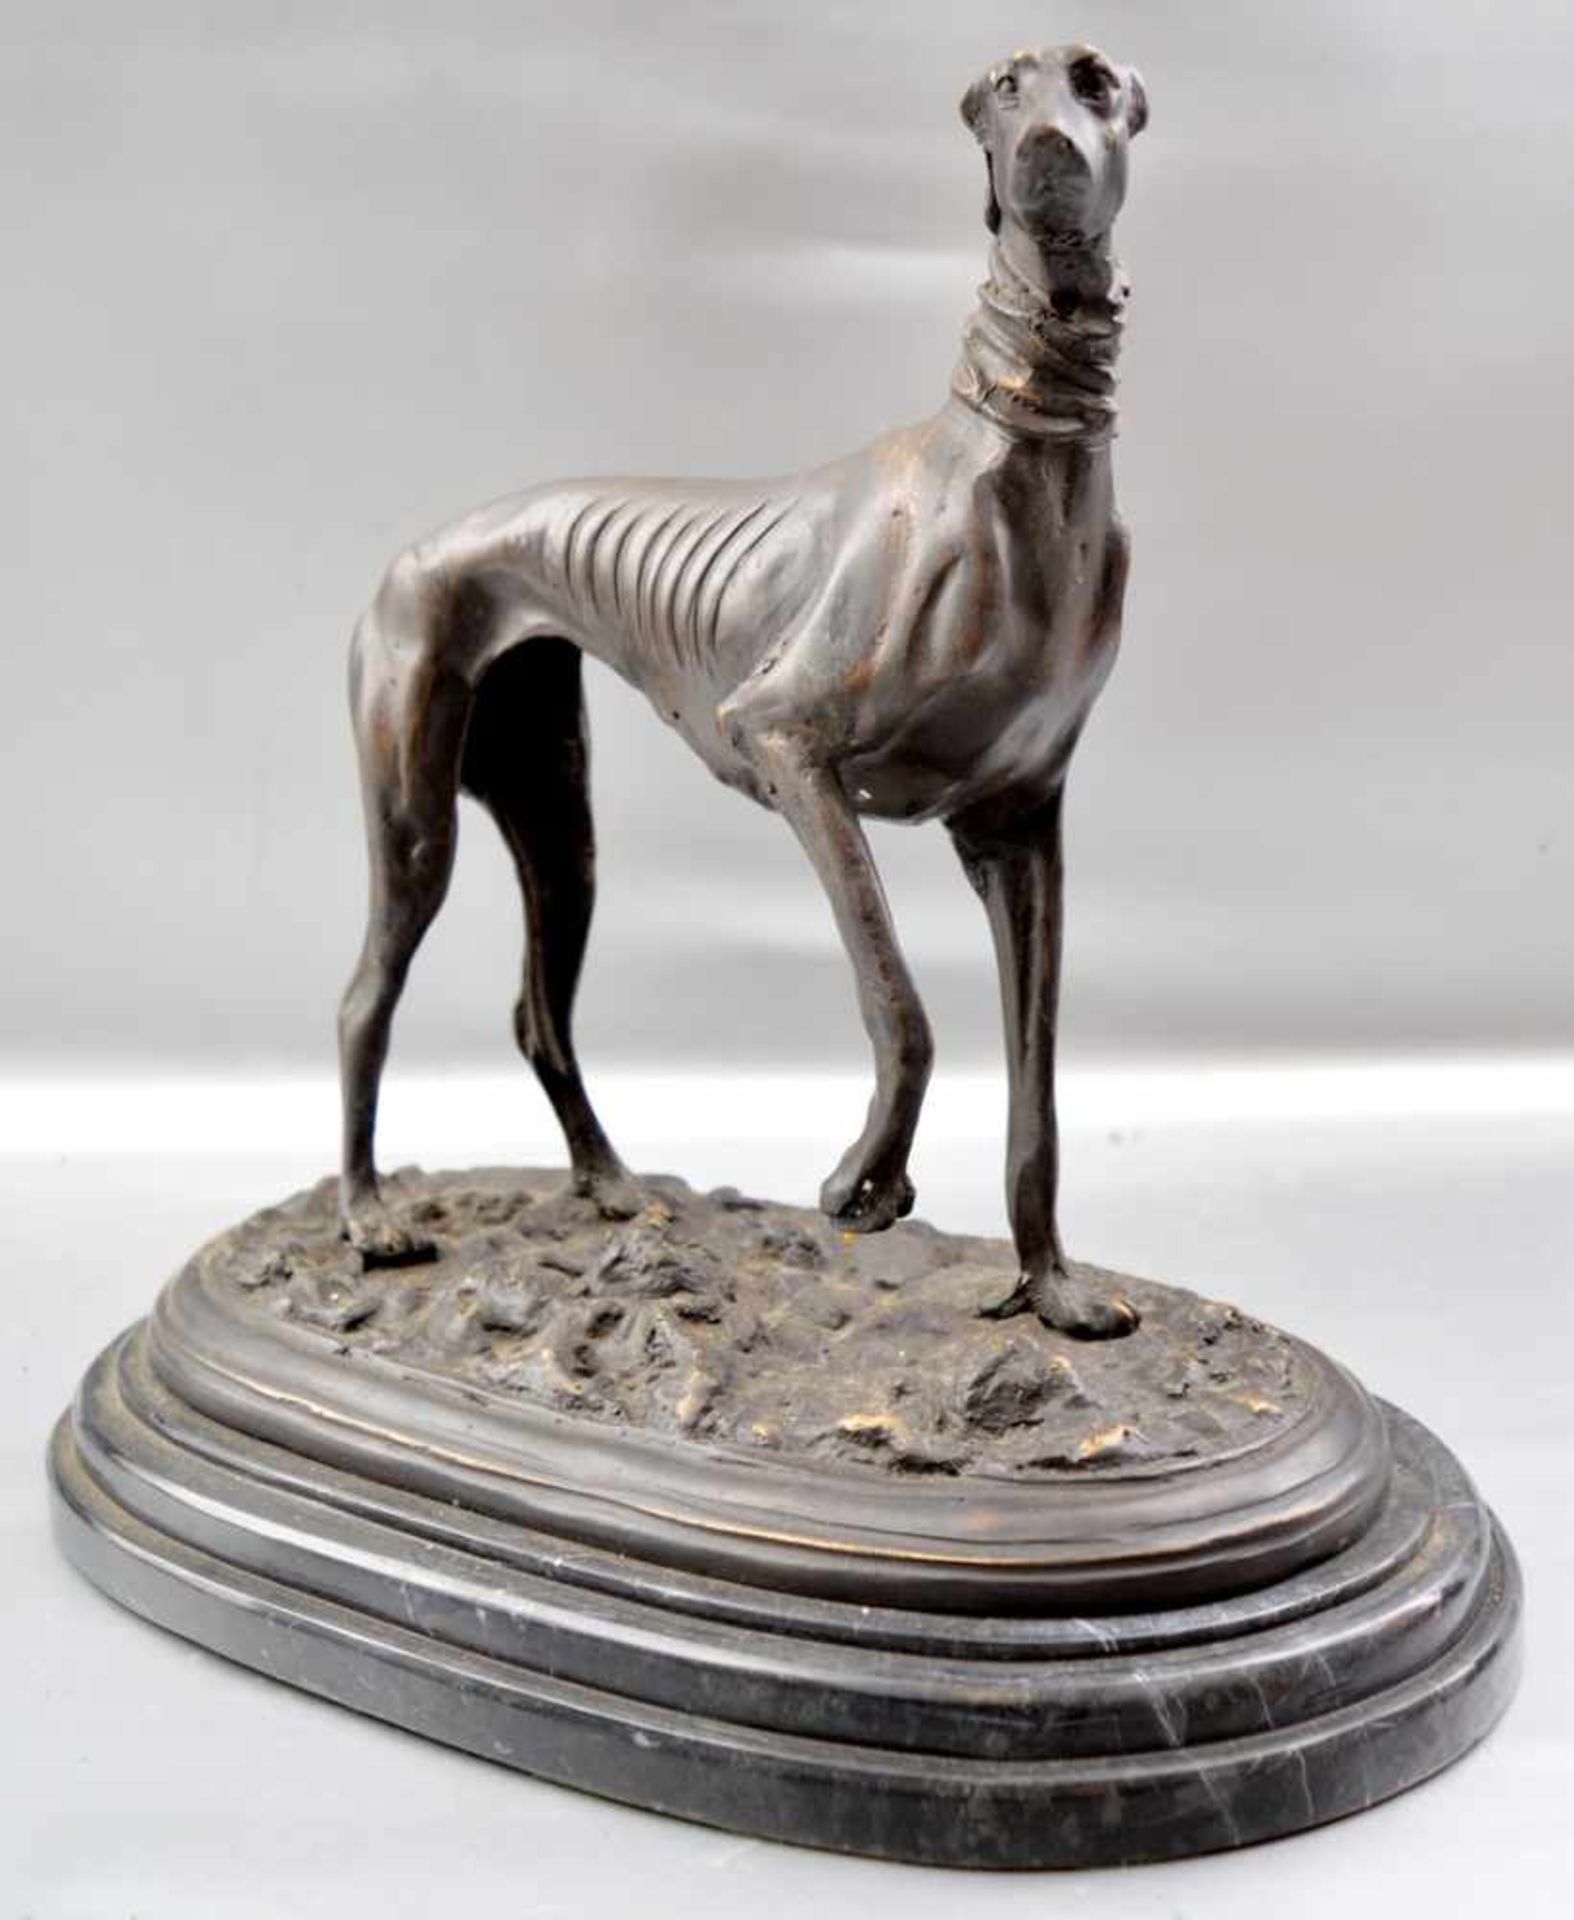 Windspiel Bronze, patiniert, auf ovalem Marmorsockel stehender Windhund, H 29 cm, B 31 cm